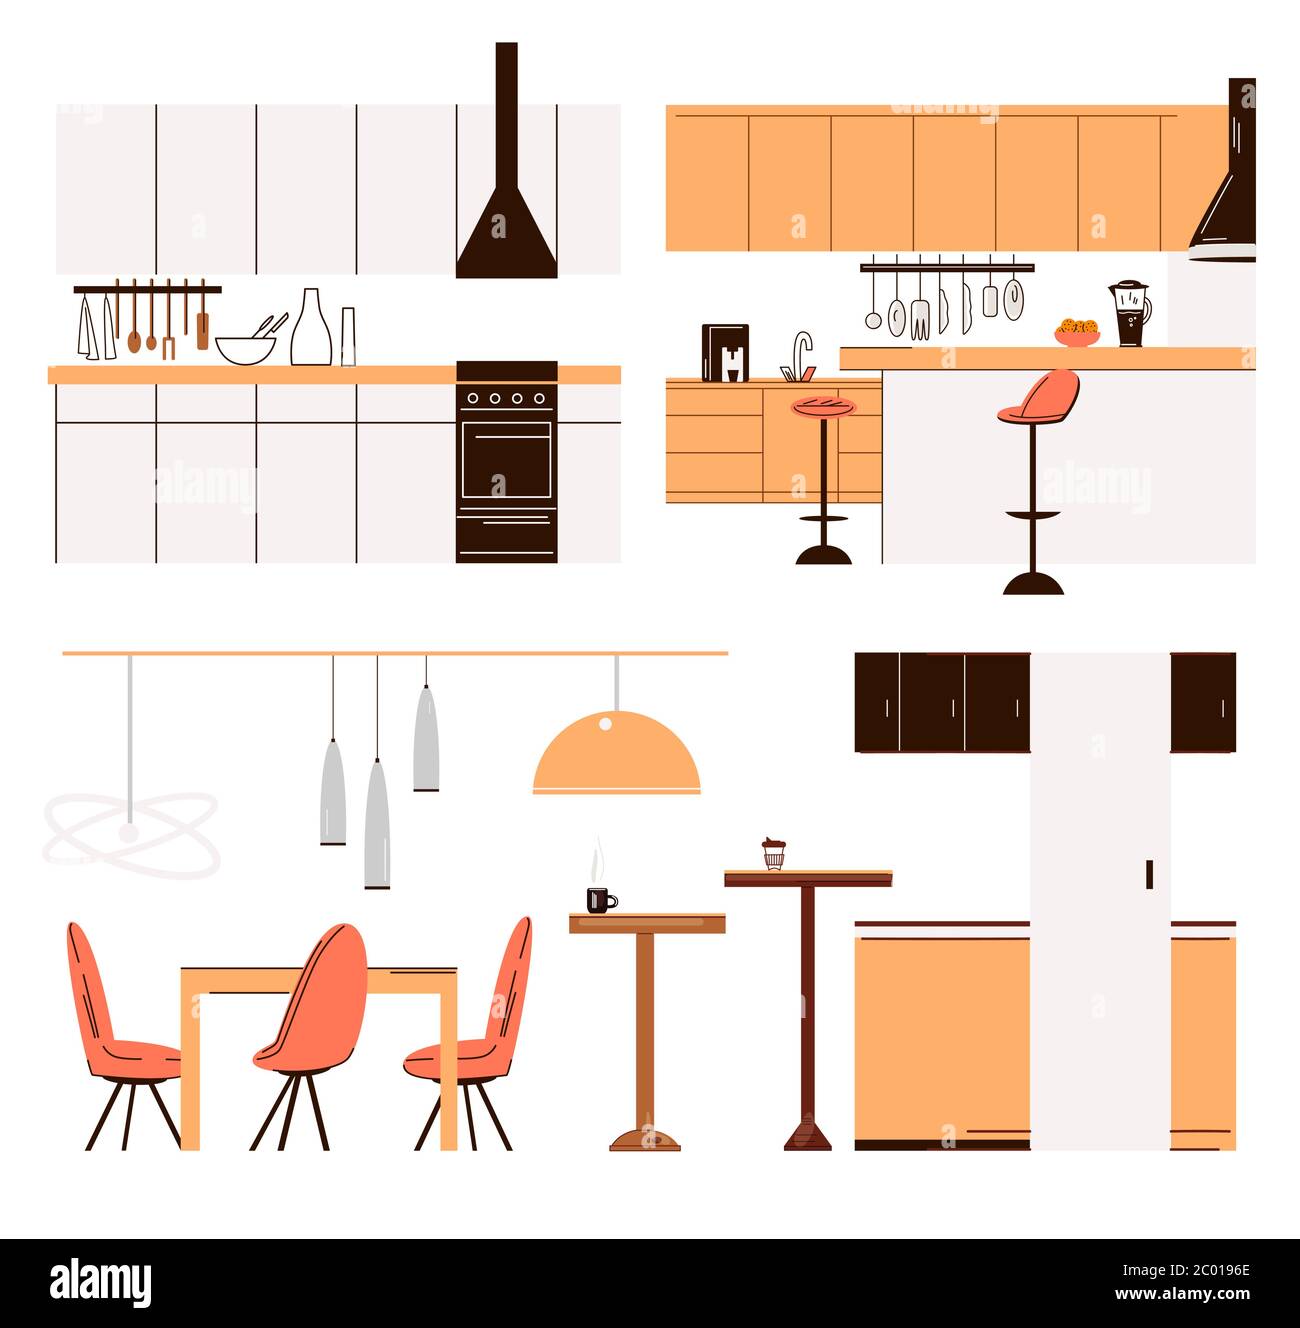 Vector flache Kollektion von Wohnküche moderne Möbel - Küchentische, Barstühle, Esstische, Herd und Koch-Zubehör. Modern, minimalistisch Stock Vektor